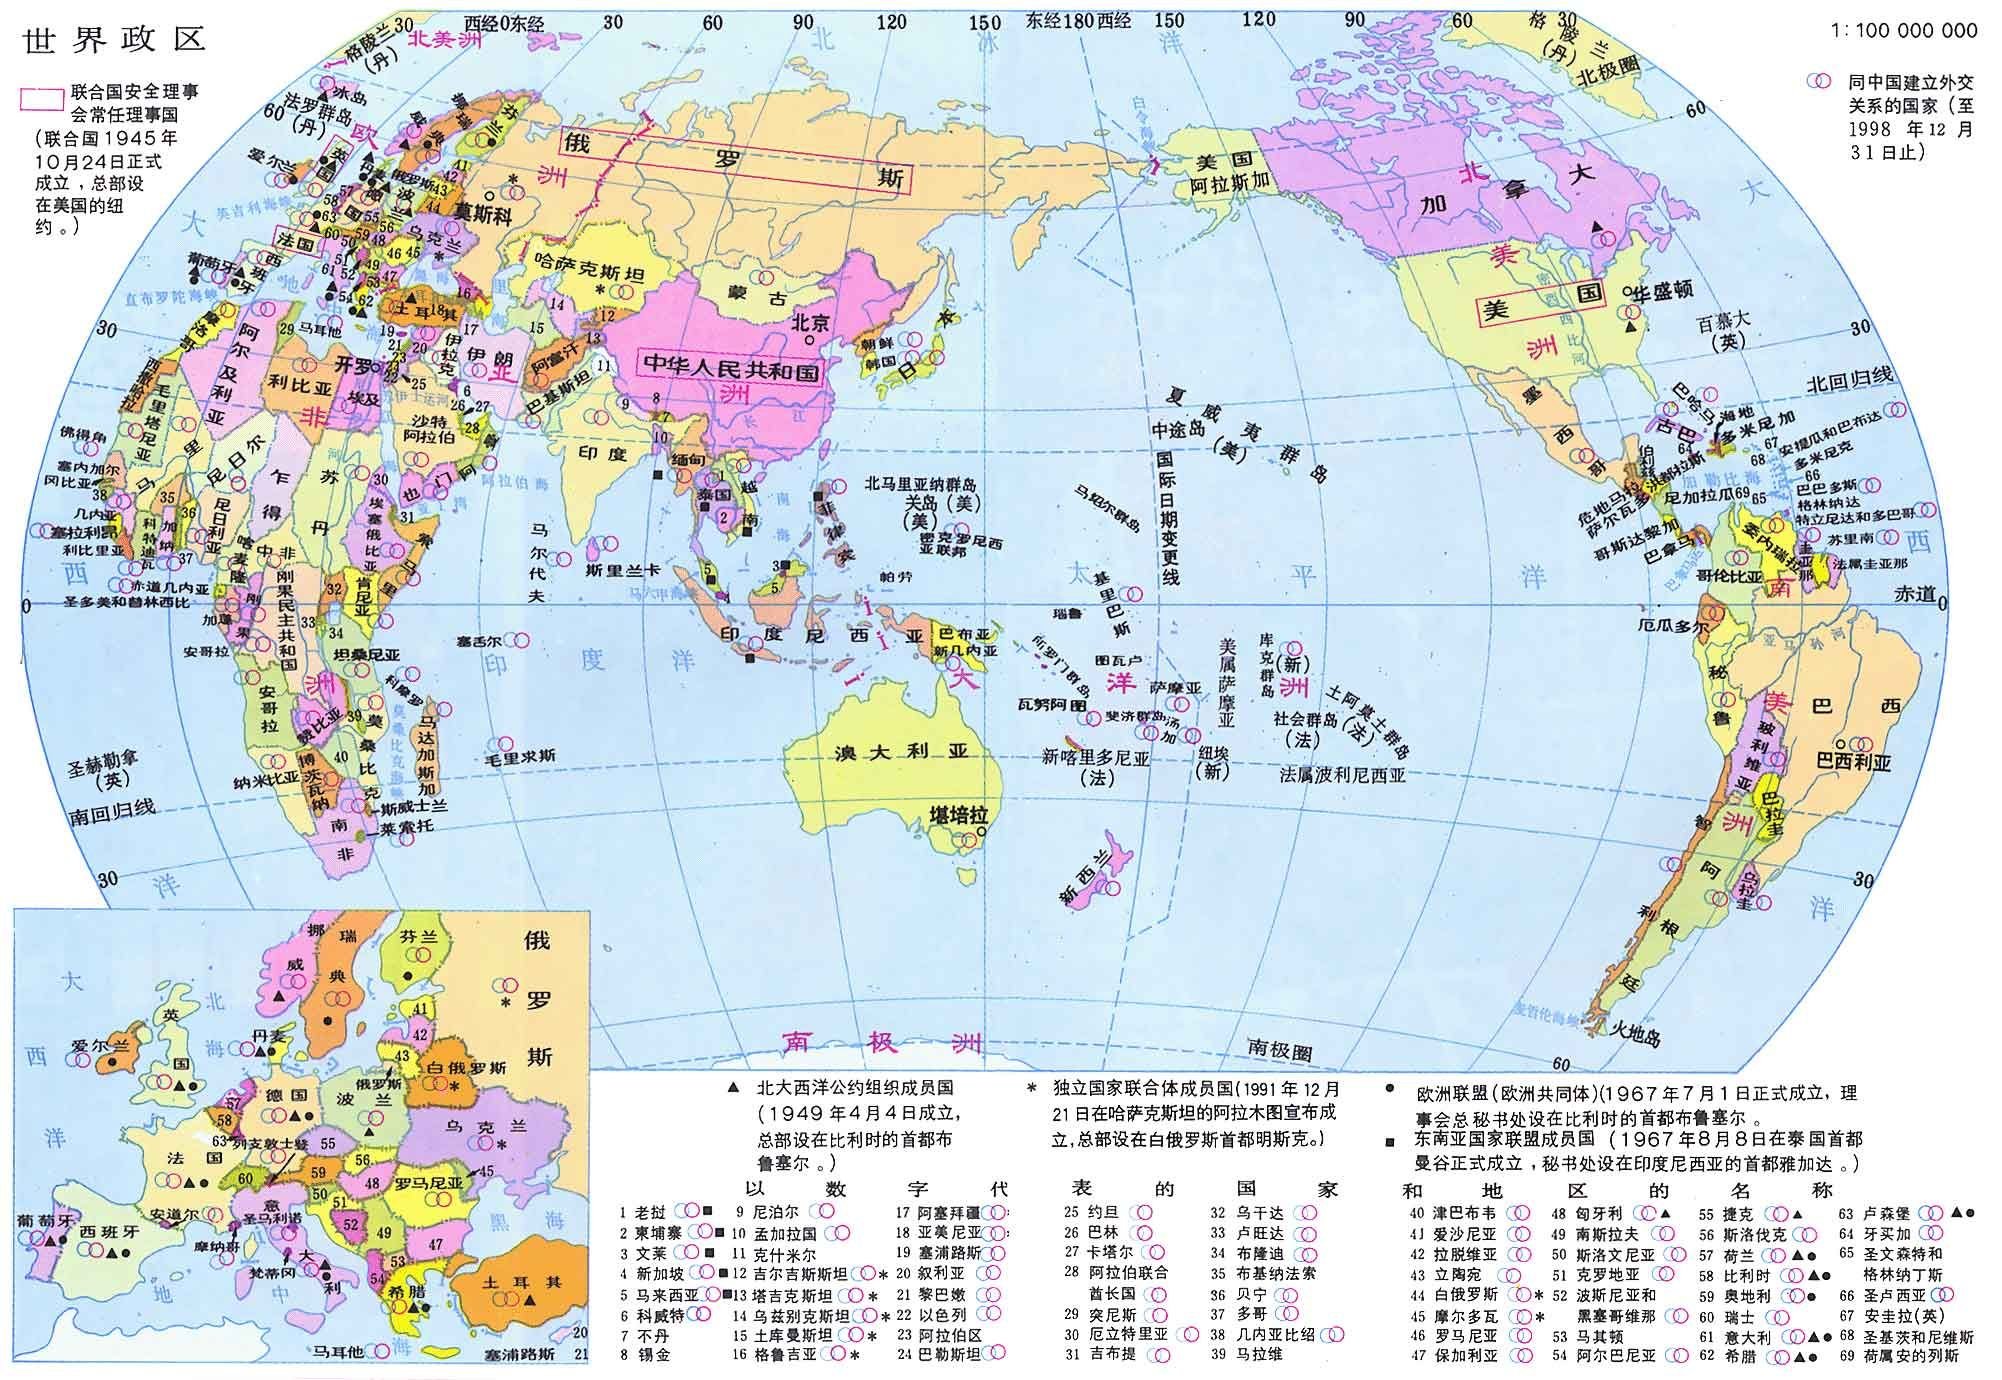 世界地图(竖版膜图)